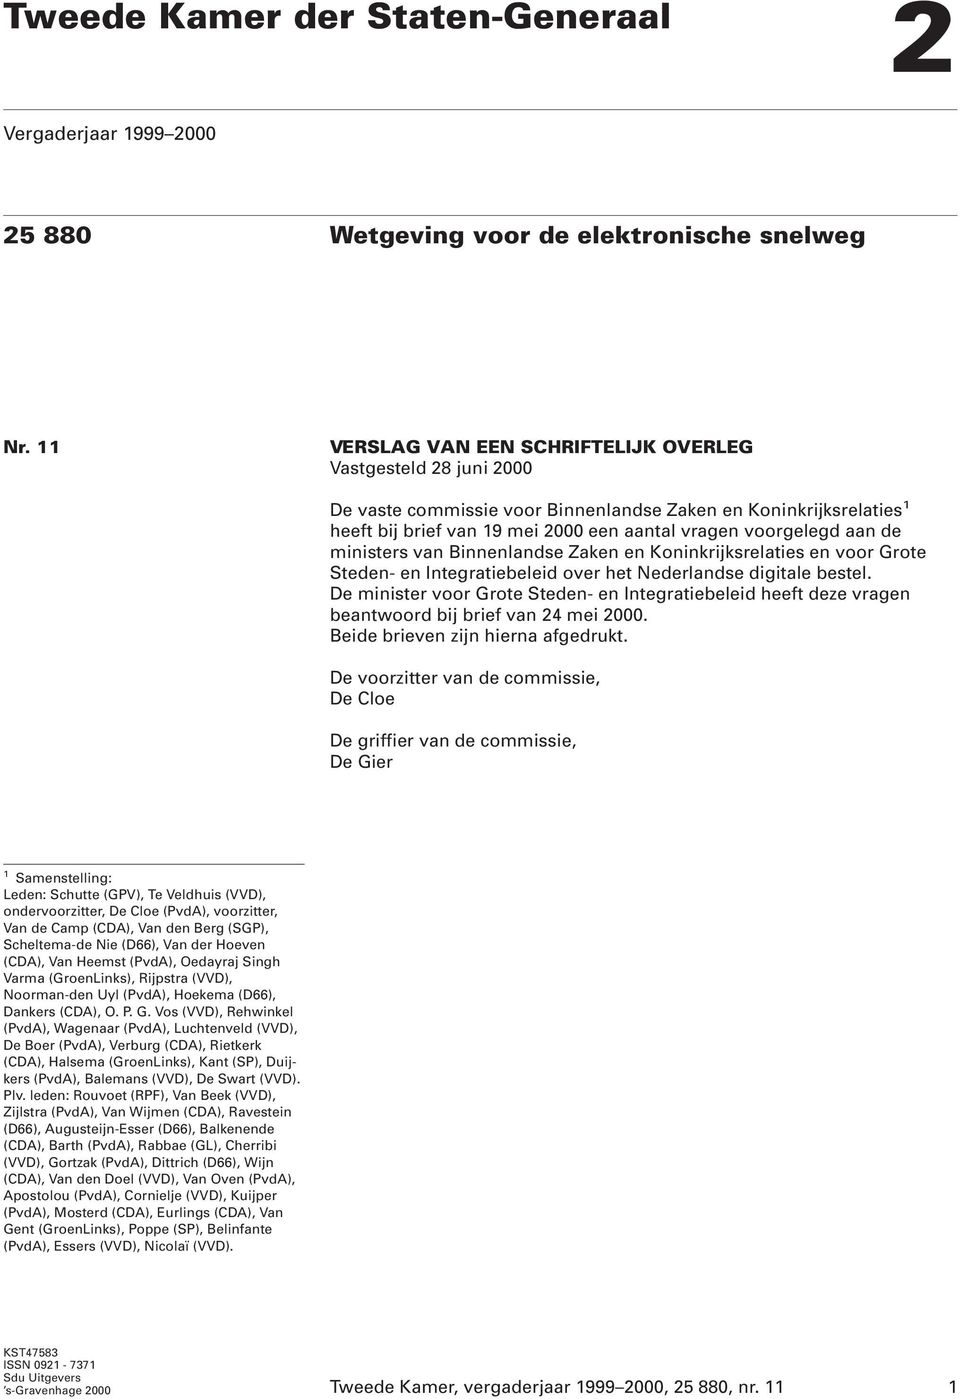 de ministers van Binnenlandse Zaken en Koninkrijksrelaties en voor Grote Steden- en Integratiebeleid over het Nederlandse digitale bestel.